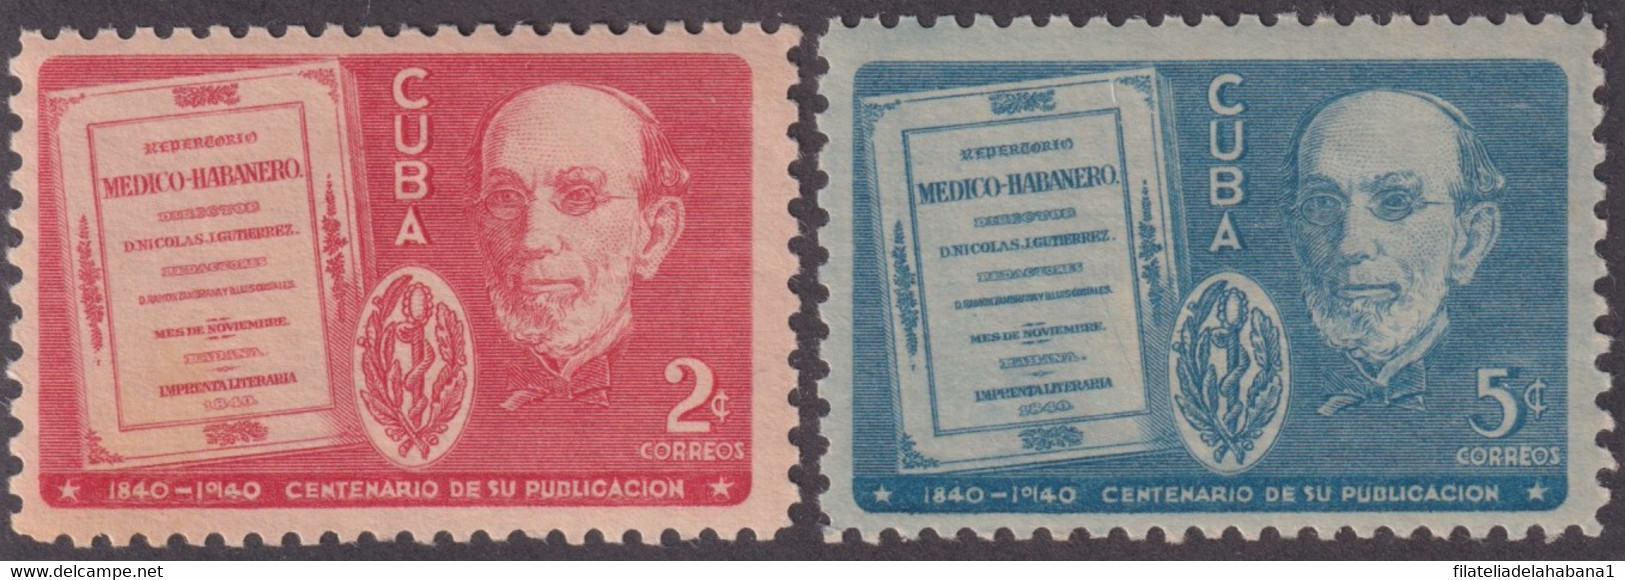 1940-339 CUBA REPUBLICA 1940 MNH CENT REPERTORIO MEDICO HABANERO GUTIERREZ - Ungebraucht